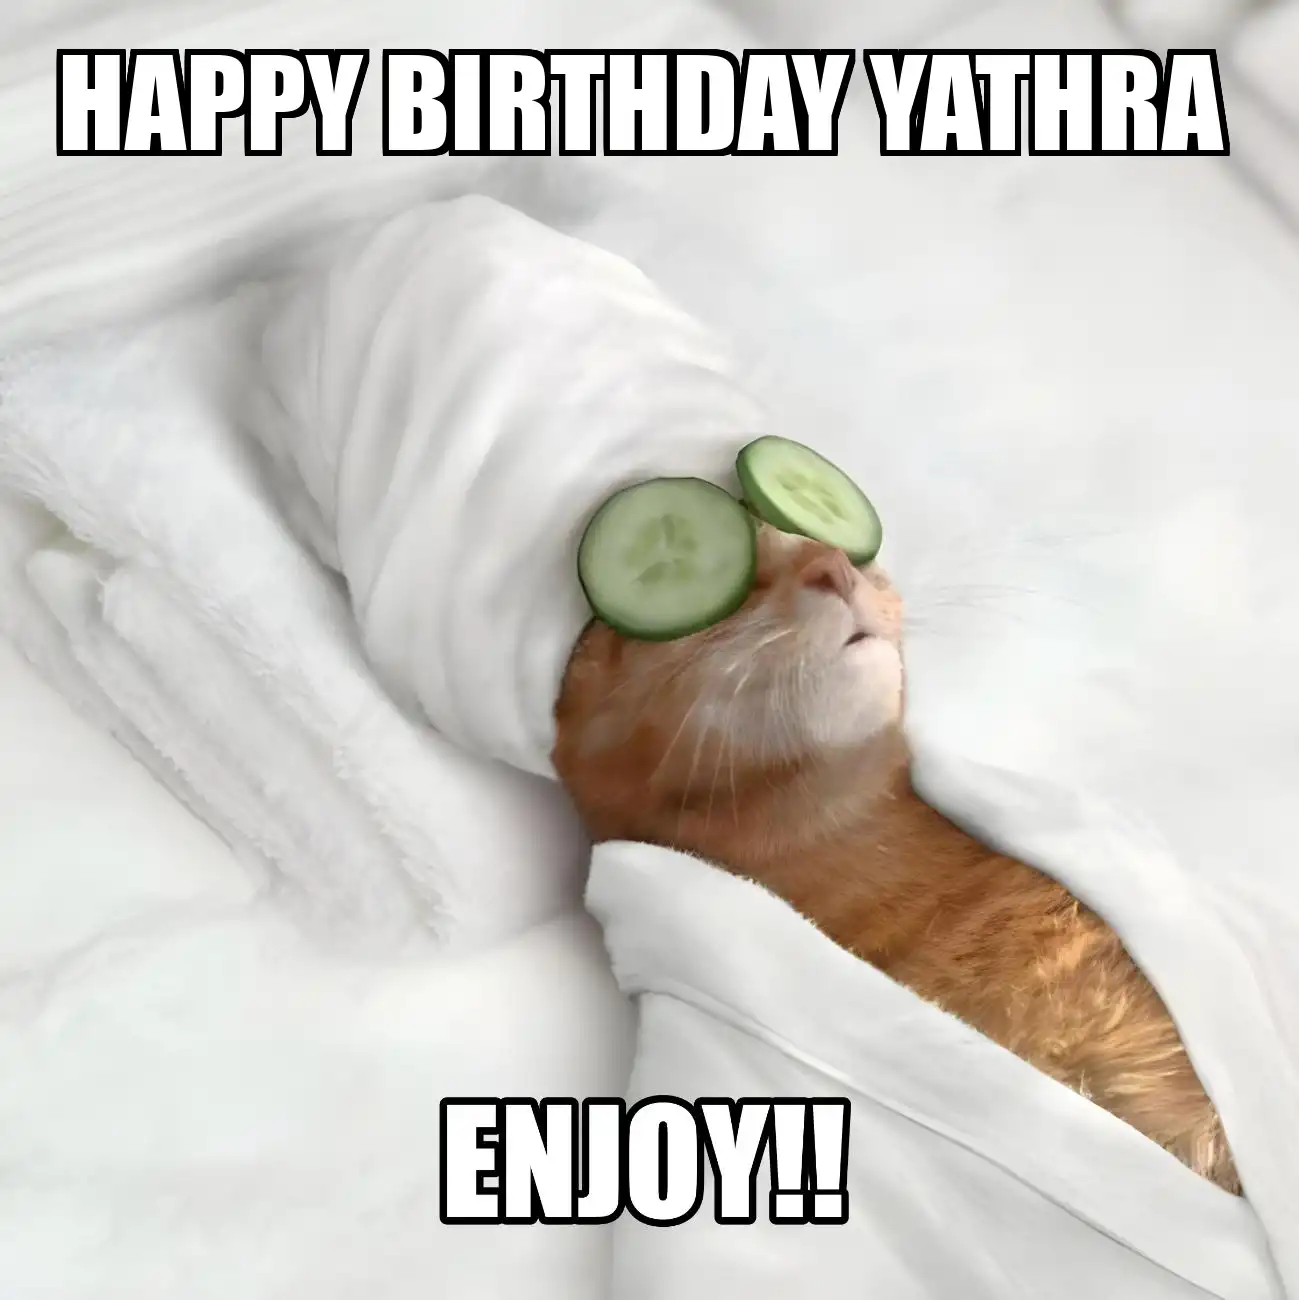 Happy Birthday Yathra Enjoy Cat Meme